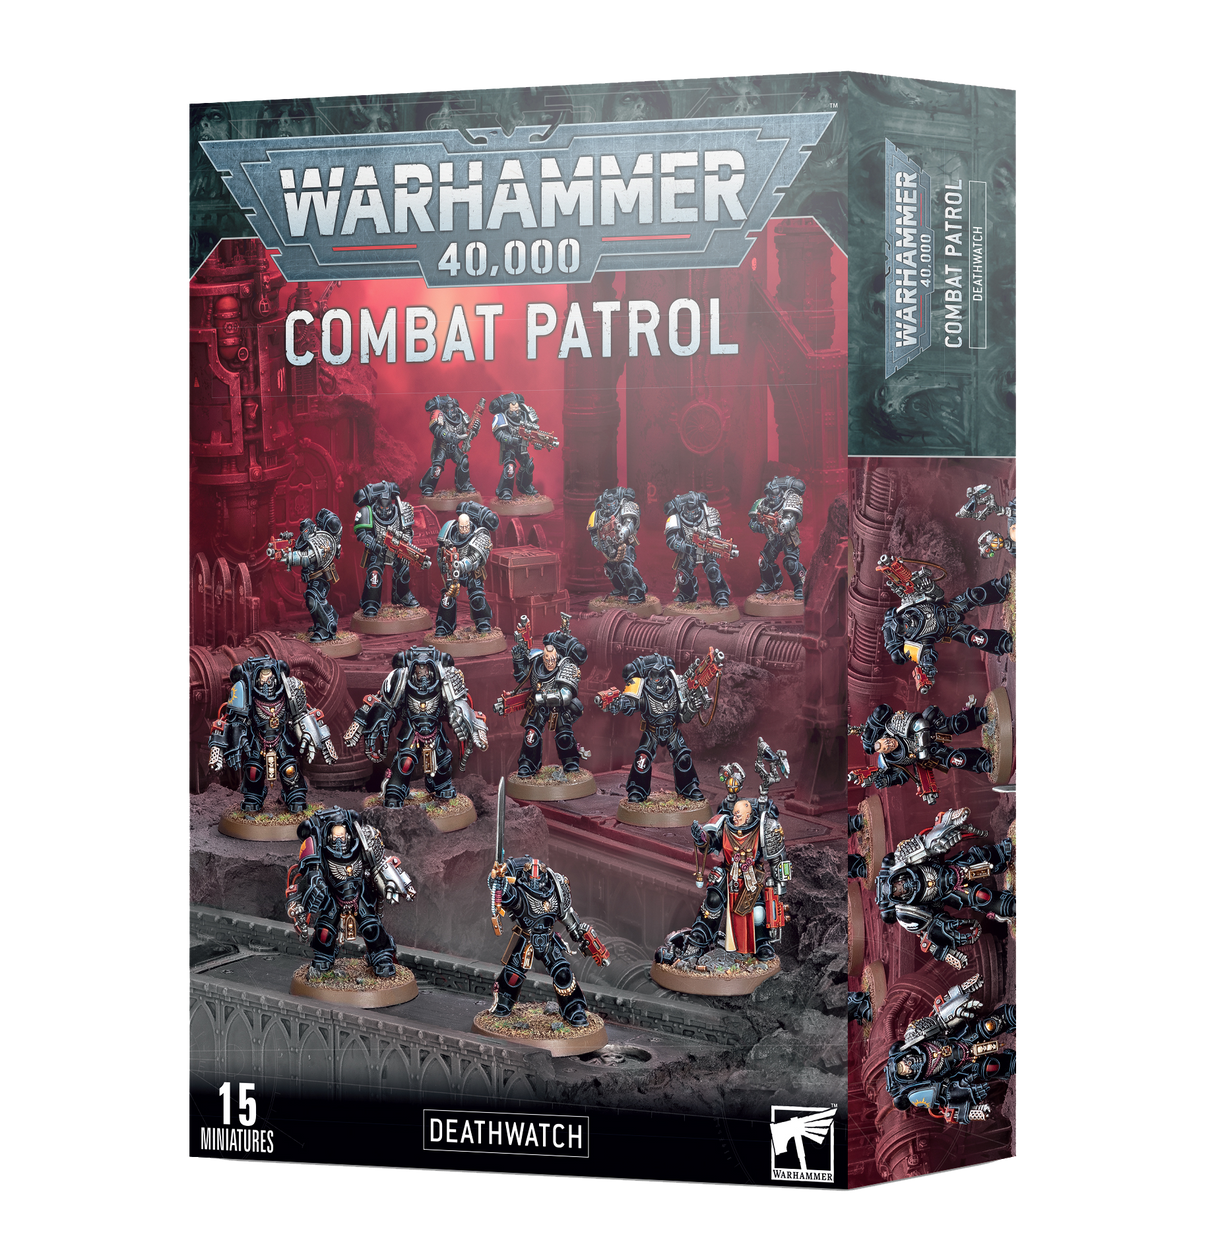 Warhammer 40,000: Combat Patrol - Deathwatch